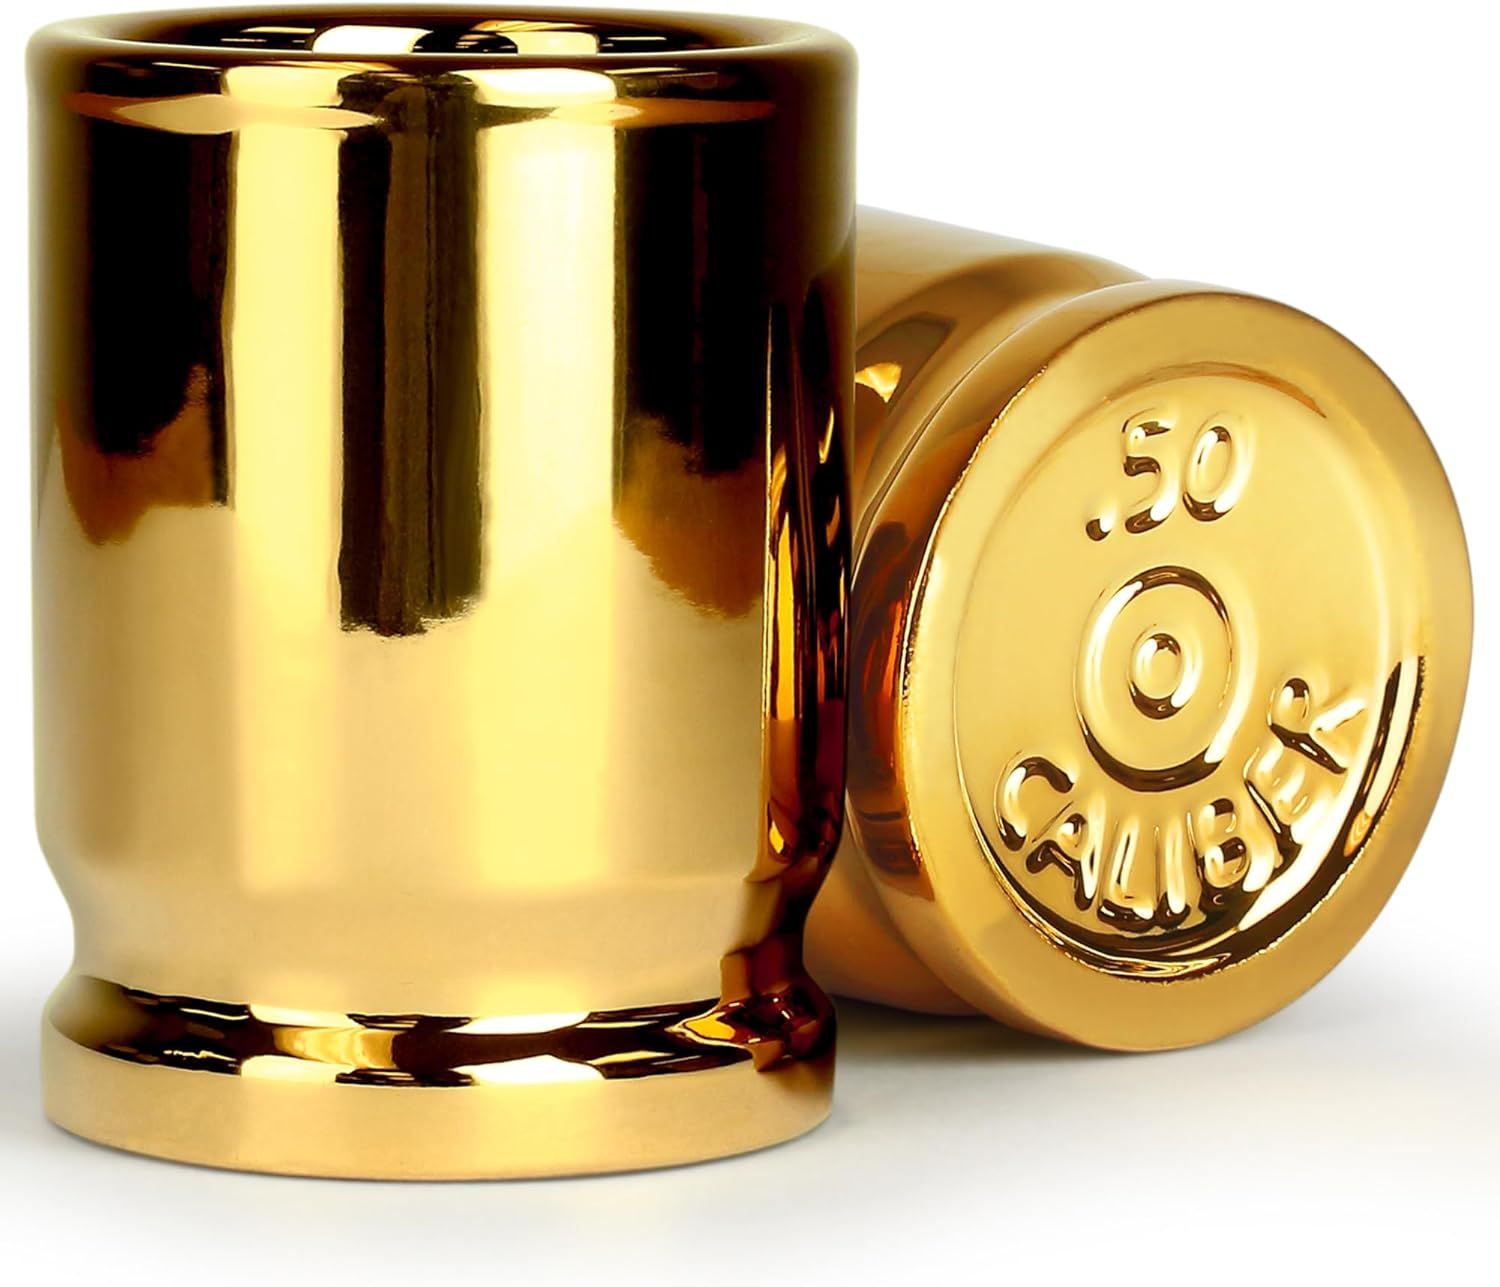 ORIGINAL 50 CAL SHOT GLASSES, Set of 2, American Owned & Designed, Like Real 50 Caliber Bullet Ca... | Amazon (US)